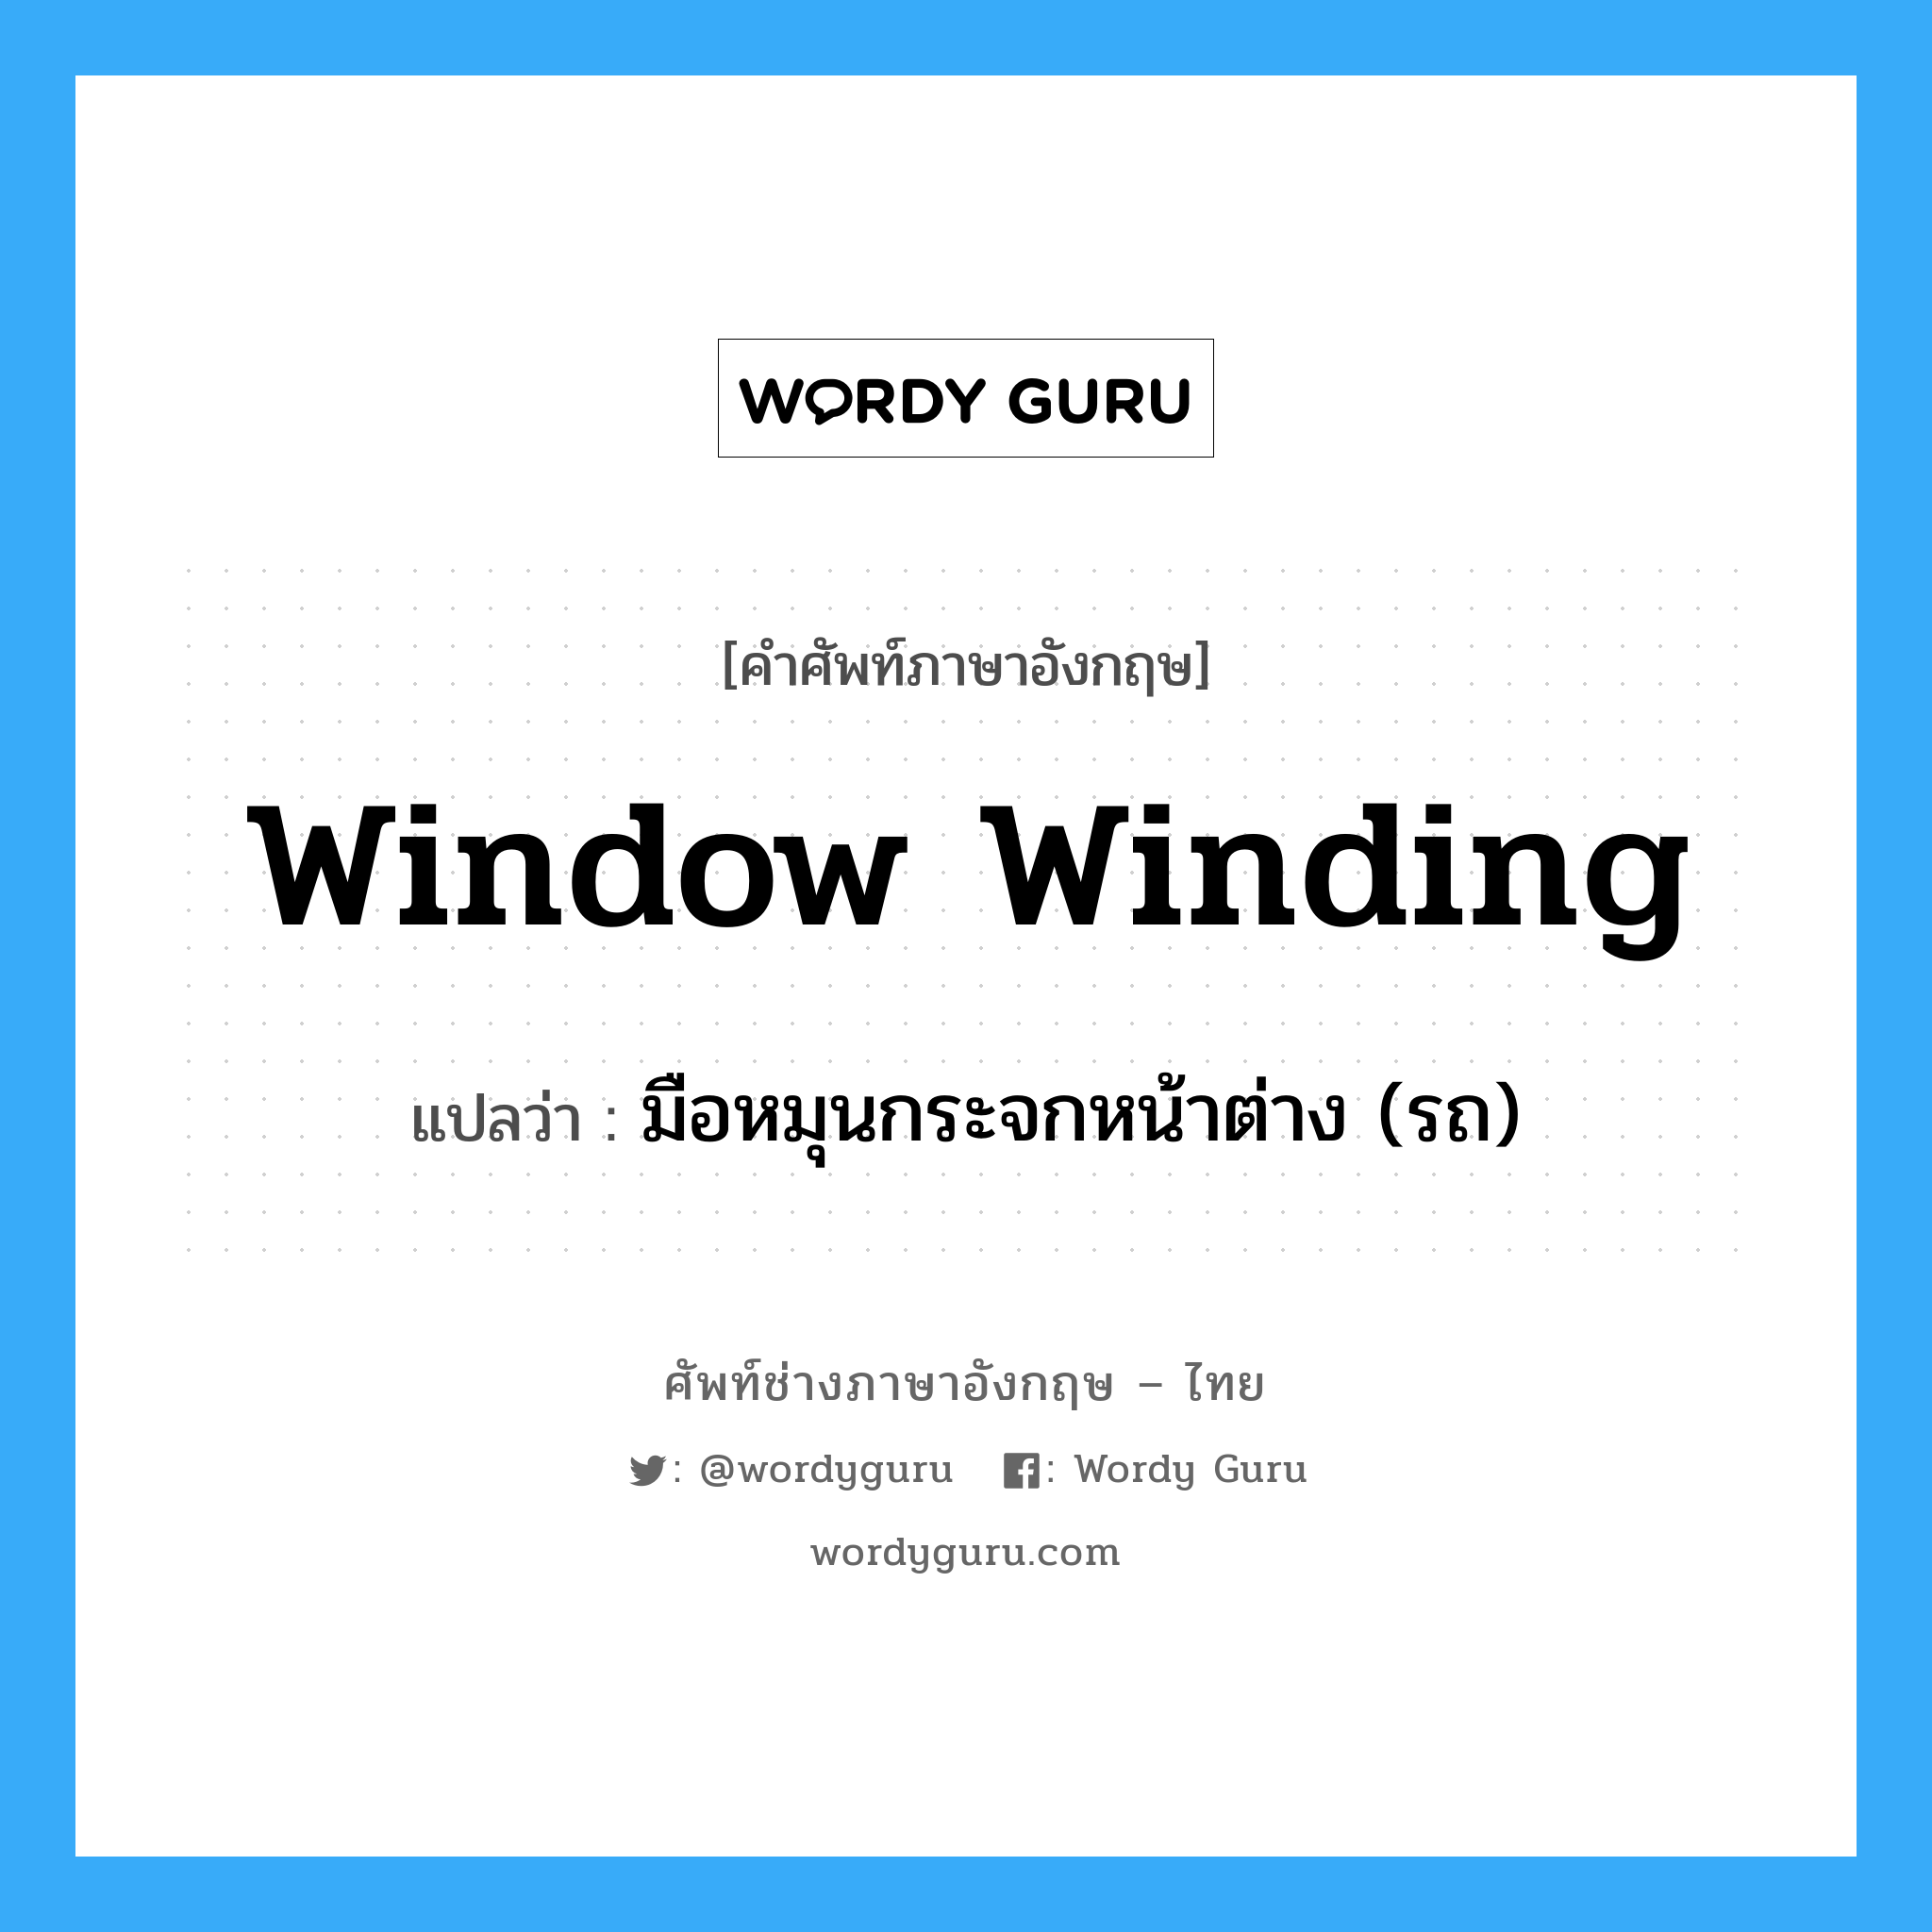 มือหมุนกระจกหน้าต่าง (รถ) ภาษาอังกฤษ?, คำศัพท์ช่างภาษาอังกฤษ - ไทย มือหมุนกระจกหน้าต่าง (รถ) คำศัพท์ภาษาอังกฤษ มือหมุนกระจกหน้าต่าง (รถ) แปลว่า window winding